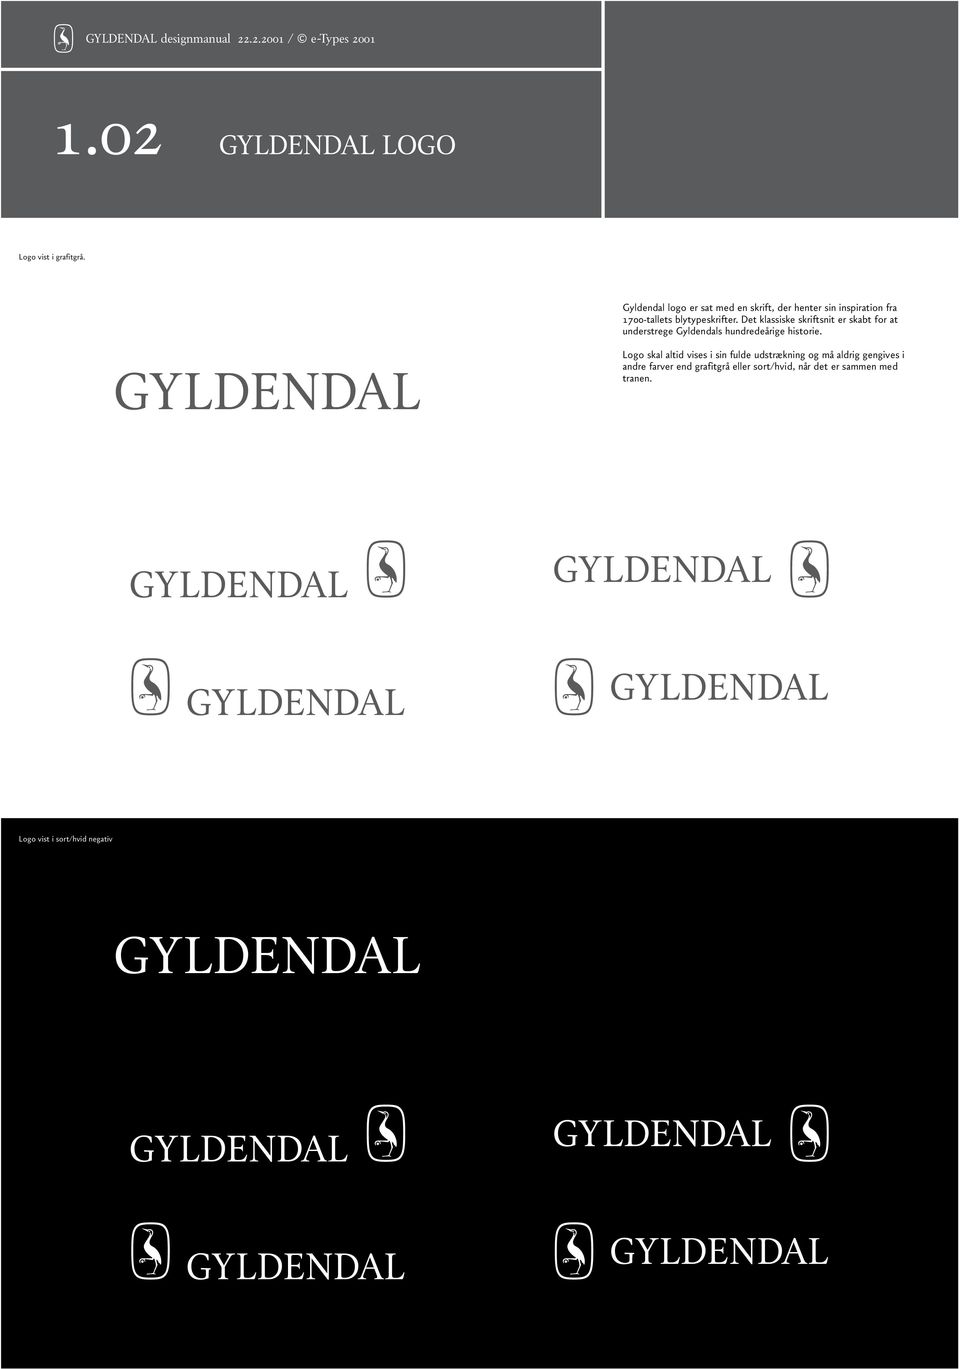 Det klassiske skriftsnit er skabt for at understrege Gyldendals hundredeårige historie.